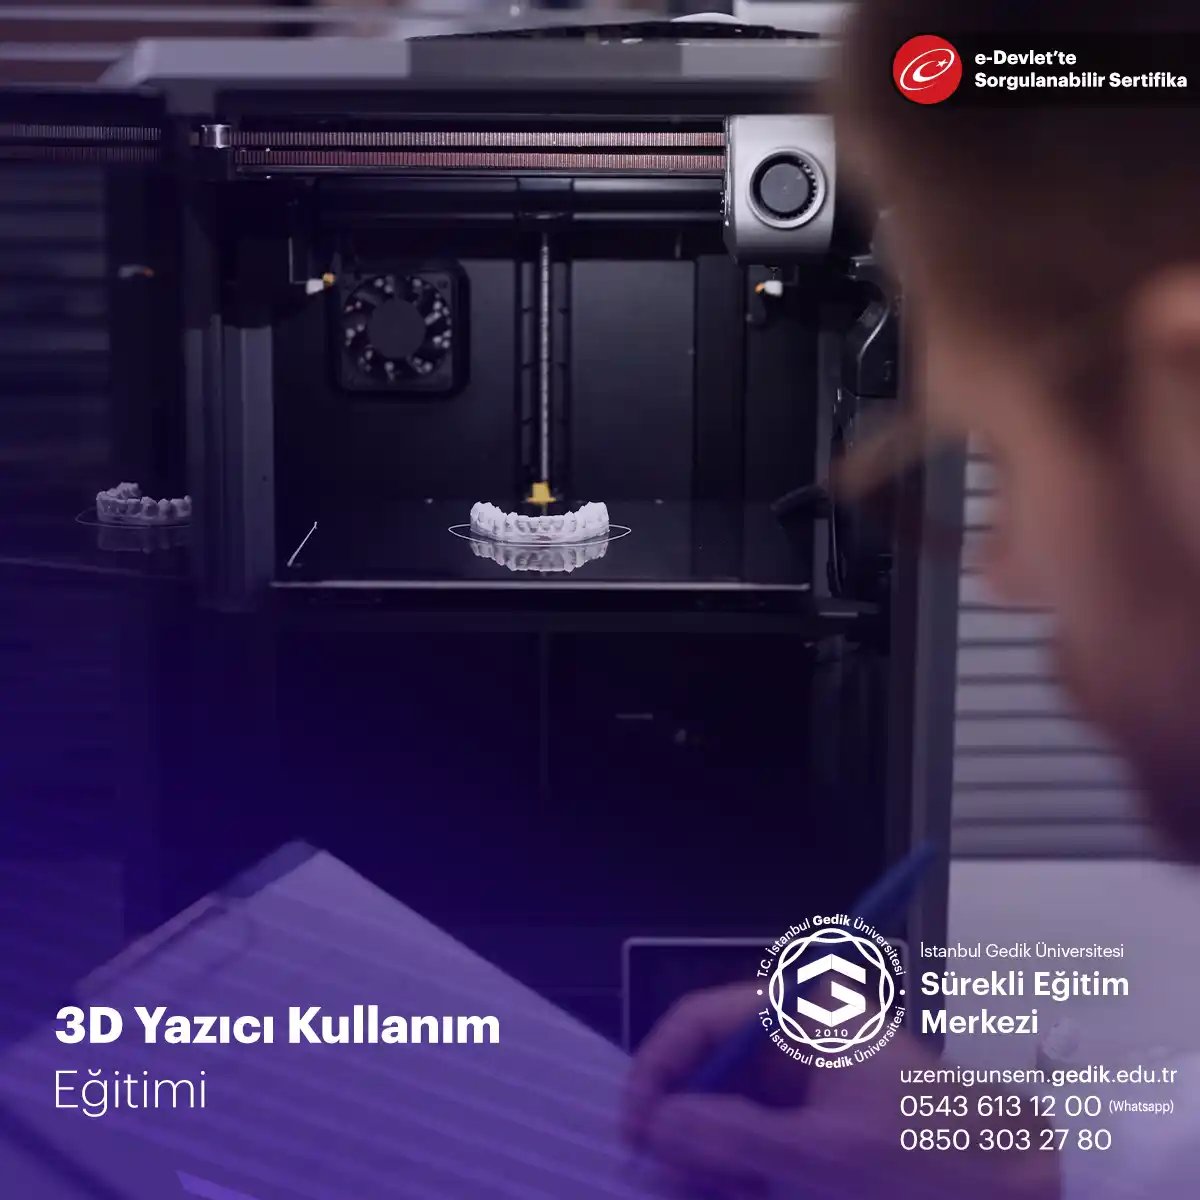 3D Yazıcı kullanımı için verilen teorik ve pratik bilgiler ile siz de 3D Yazıcılarını aktif olarak kullanabilir ve 3D Yazıcı çıktıları alabilirsiniz. 